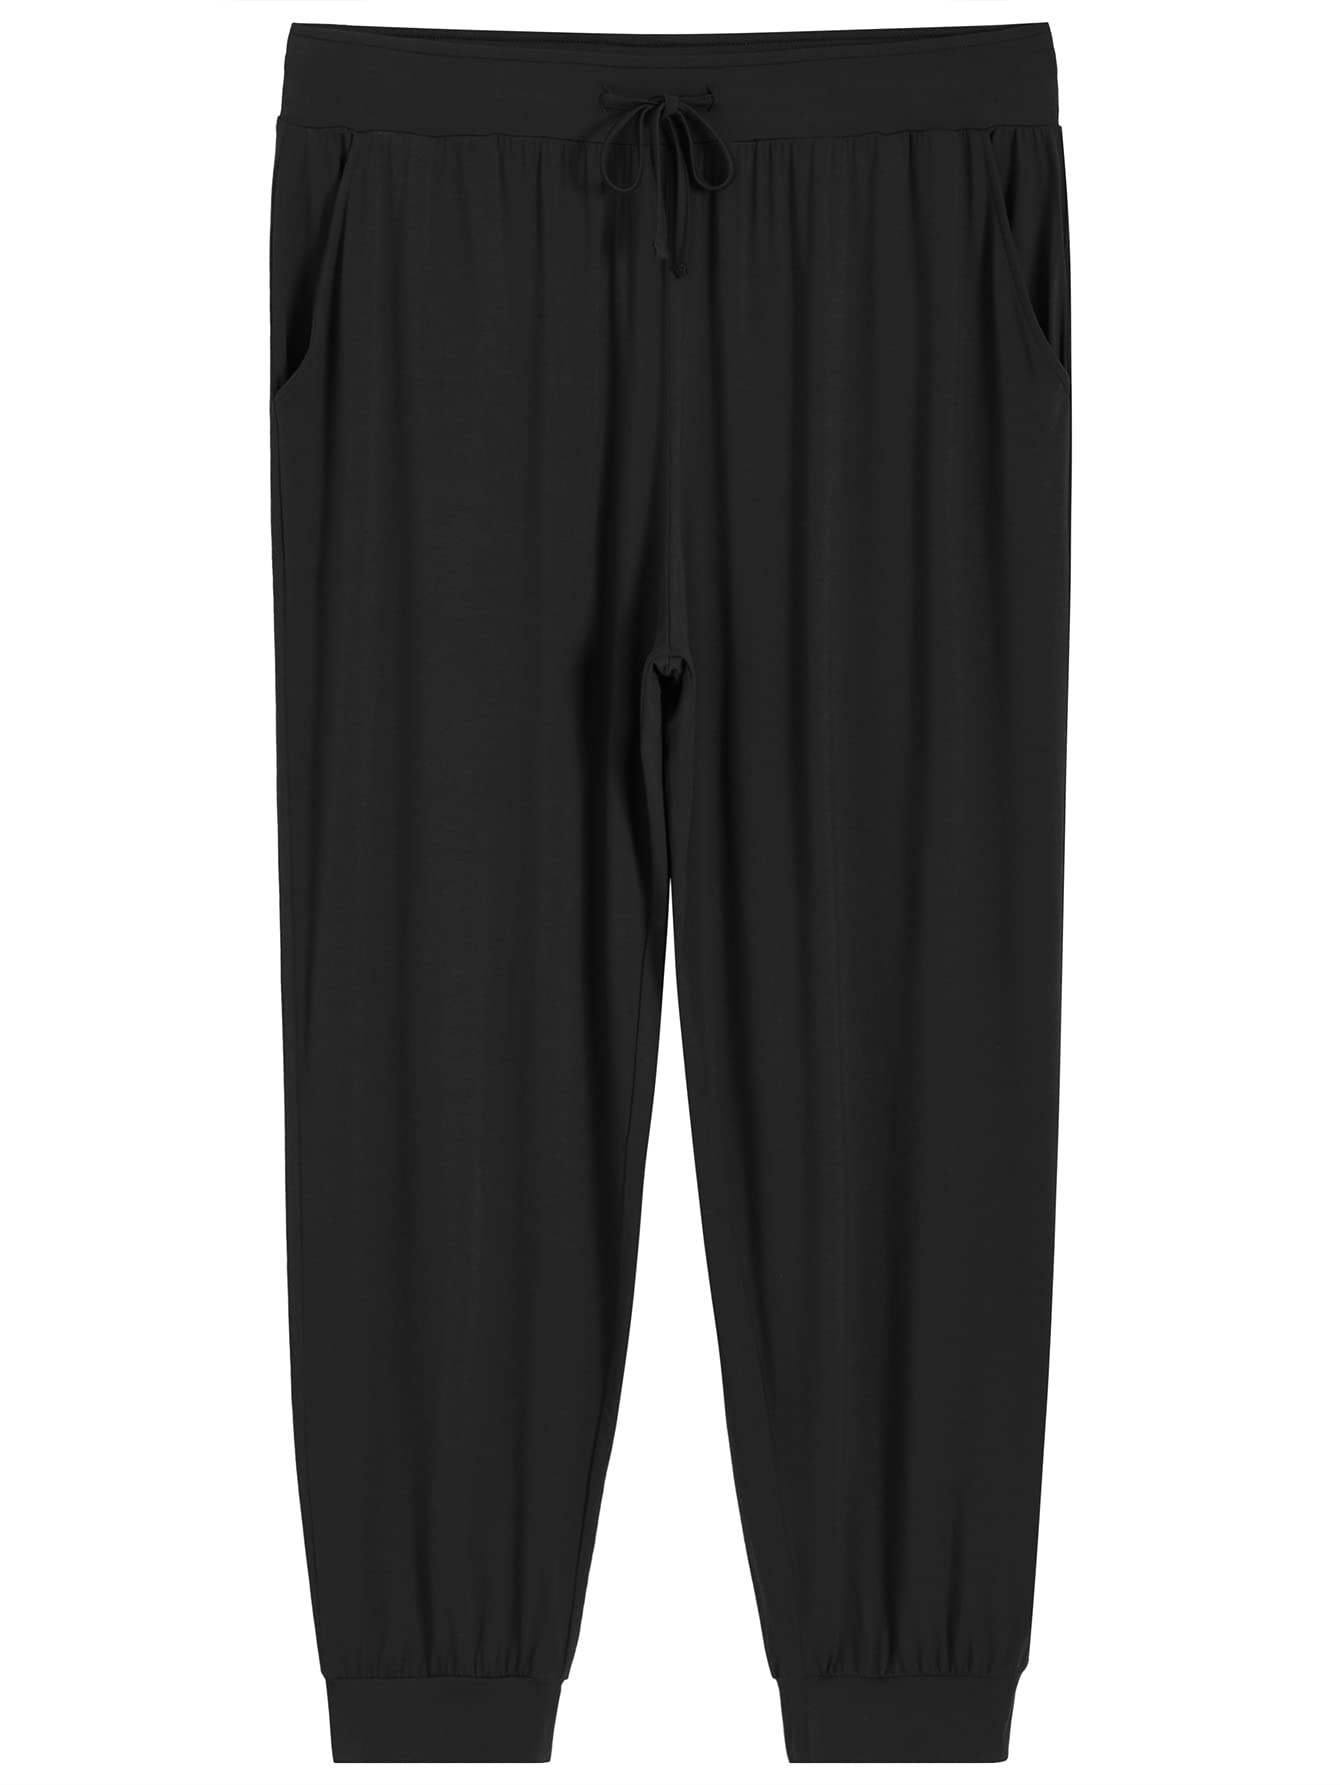 Women's Petite Soft Viscose Pajama Pants with Pockets – Latuza